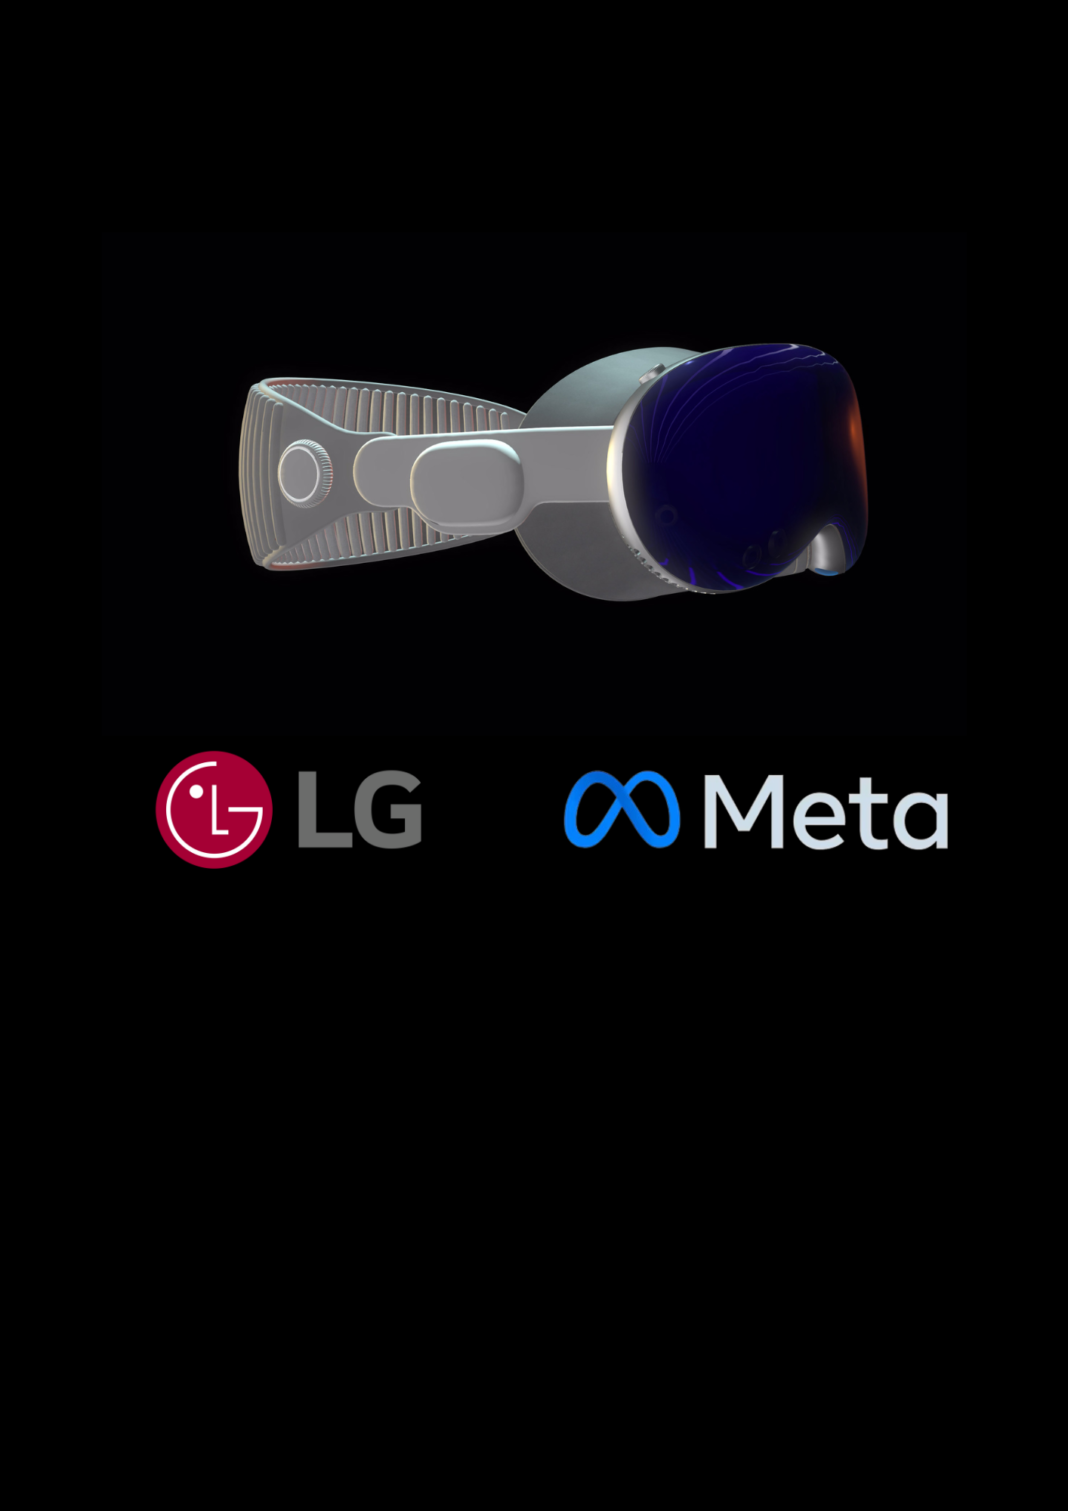 LG I Meta I XR I Chainlatin.com